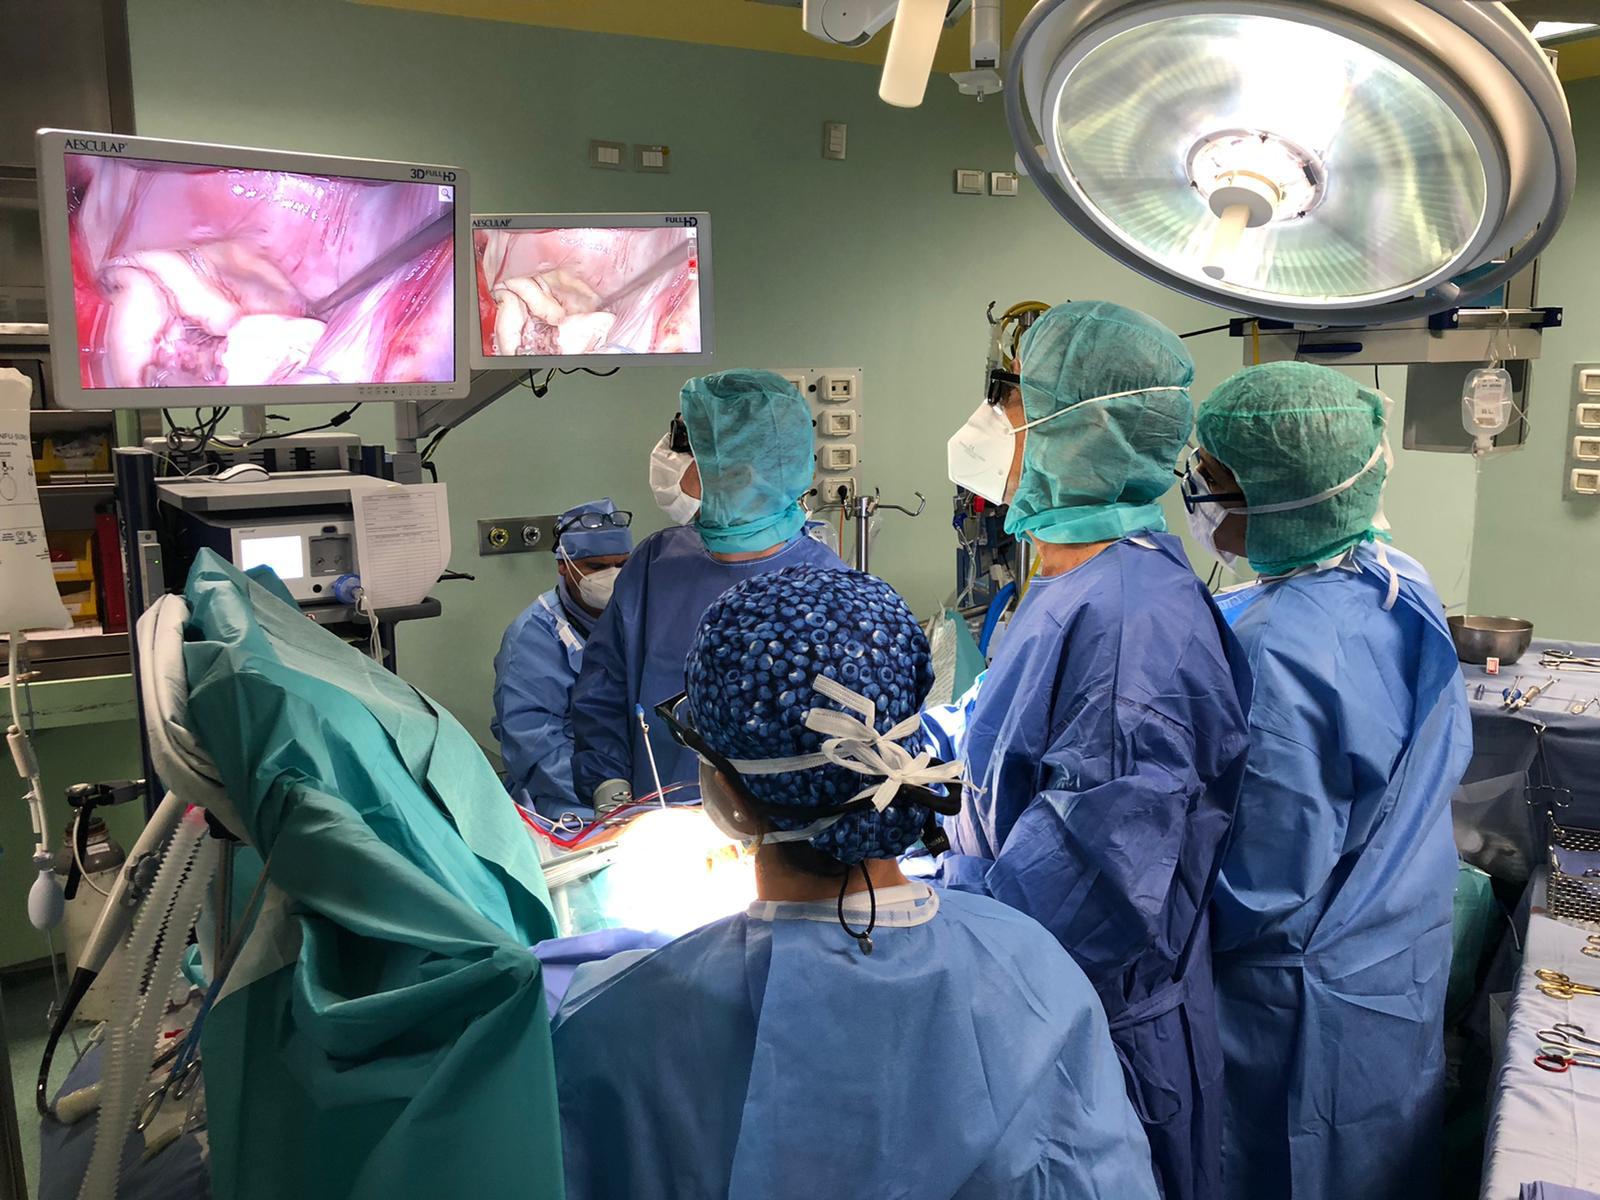 Cuore operato in endoscopia 3D, al San Donato prima italiana